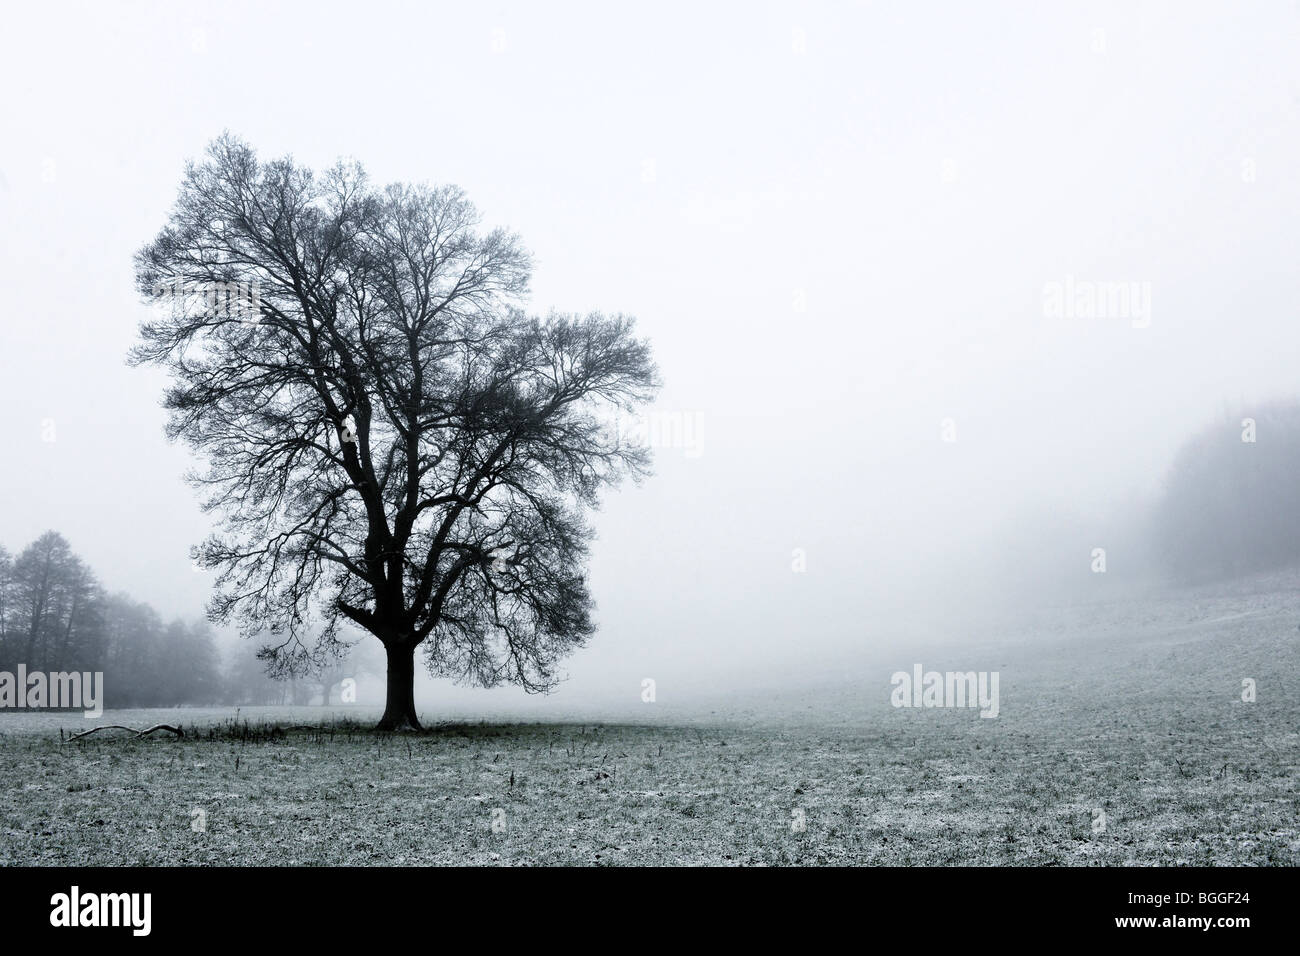 oak tree in mist in winter landscape Stock Photo